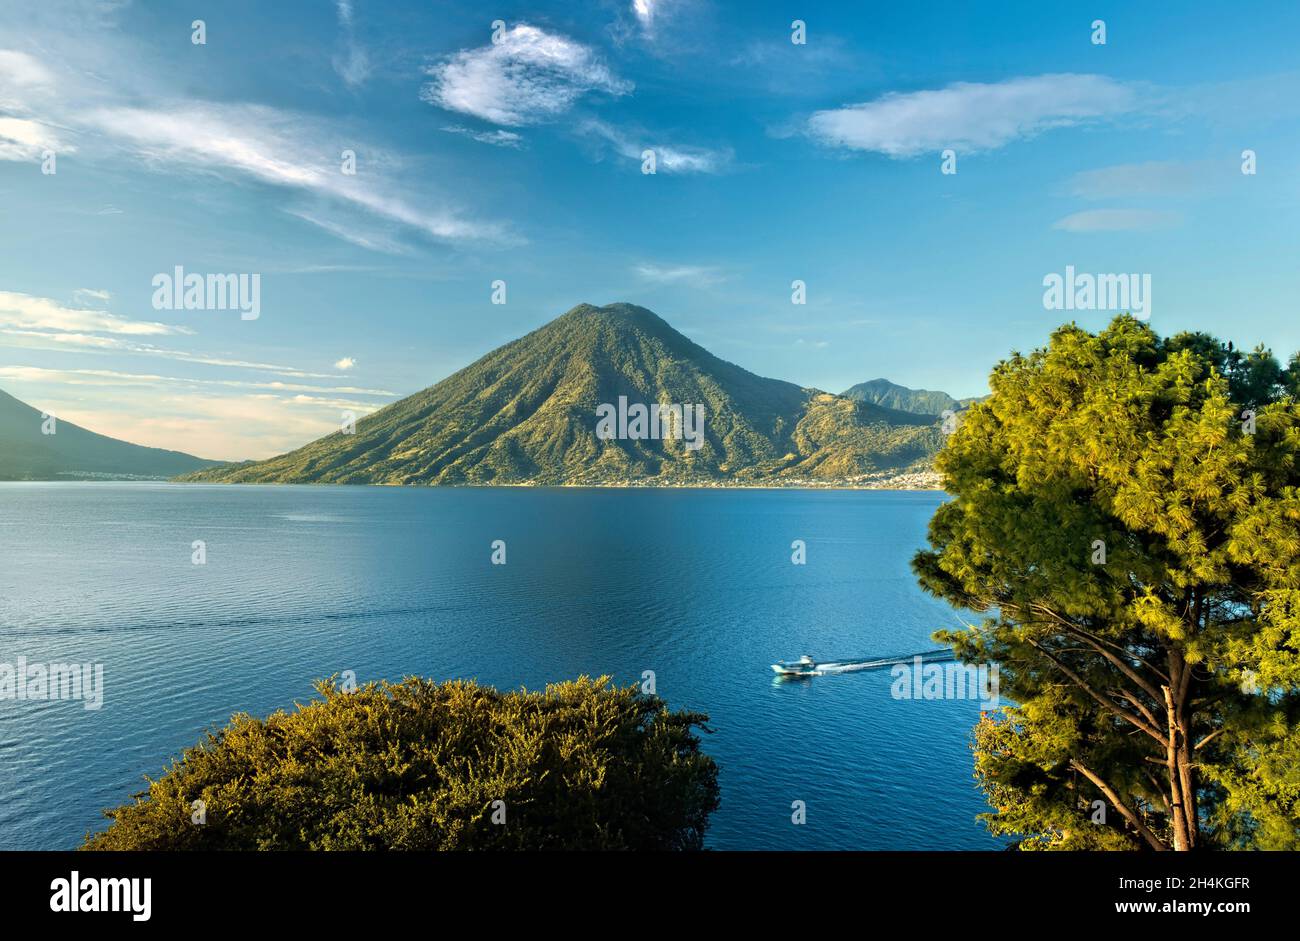 Vista del volcán San Pedro y el lago Atitlán, Solola, Guatemala. Foto de stock